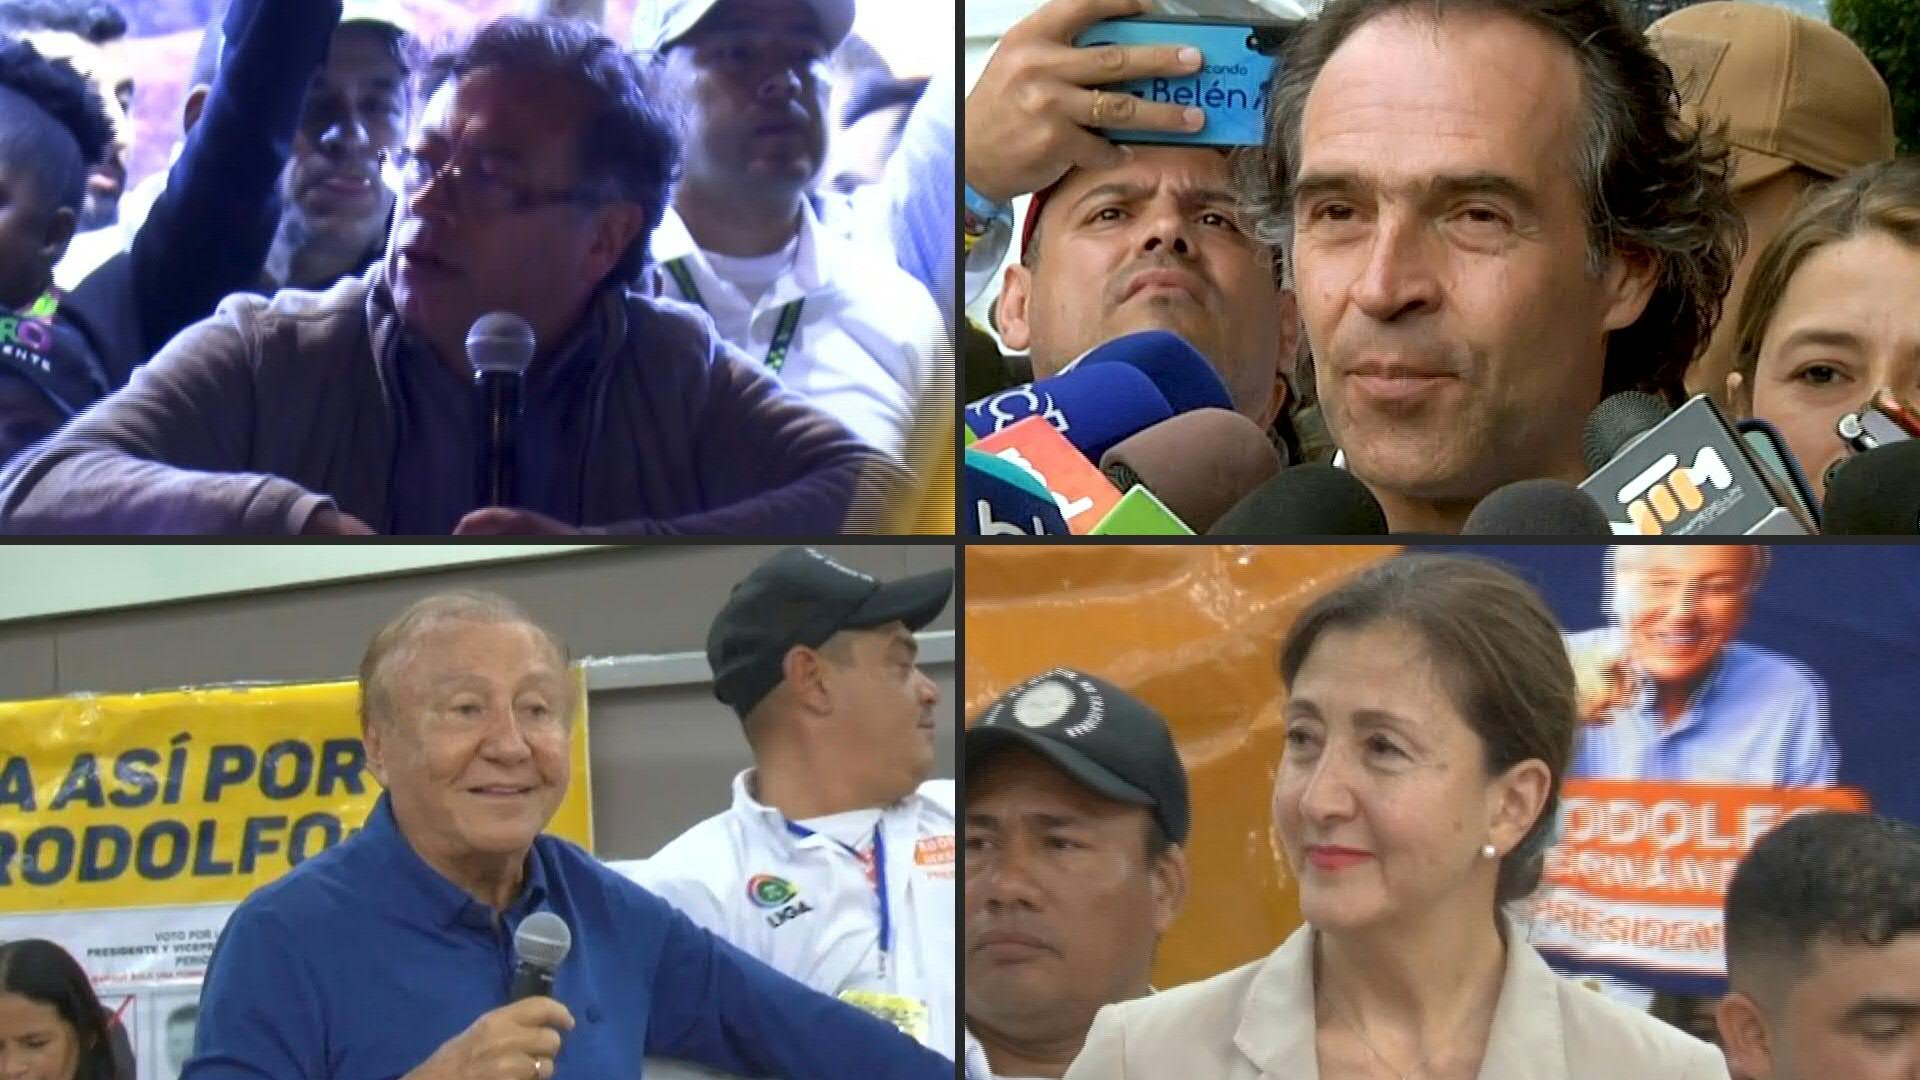 A una semana de las presidenciales en Colombia, la campaña se tensa en la recta final. Este domingo los candidatos terminan sus intervenciones en plaza pública, a la caza de los indecisos en un ambiente cada vez más polarizado.